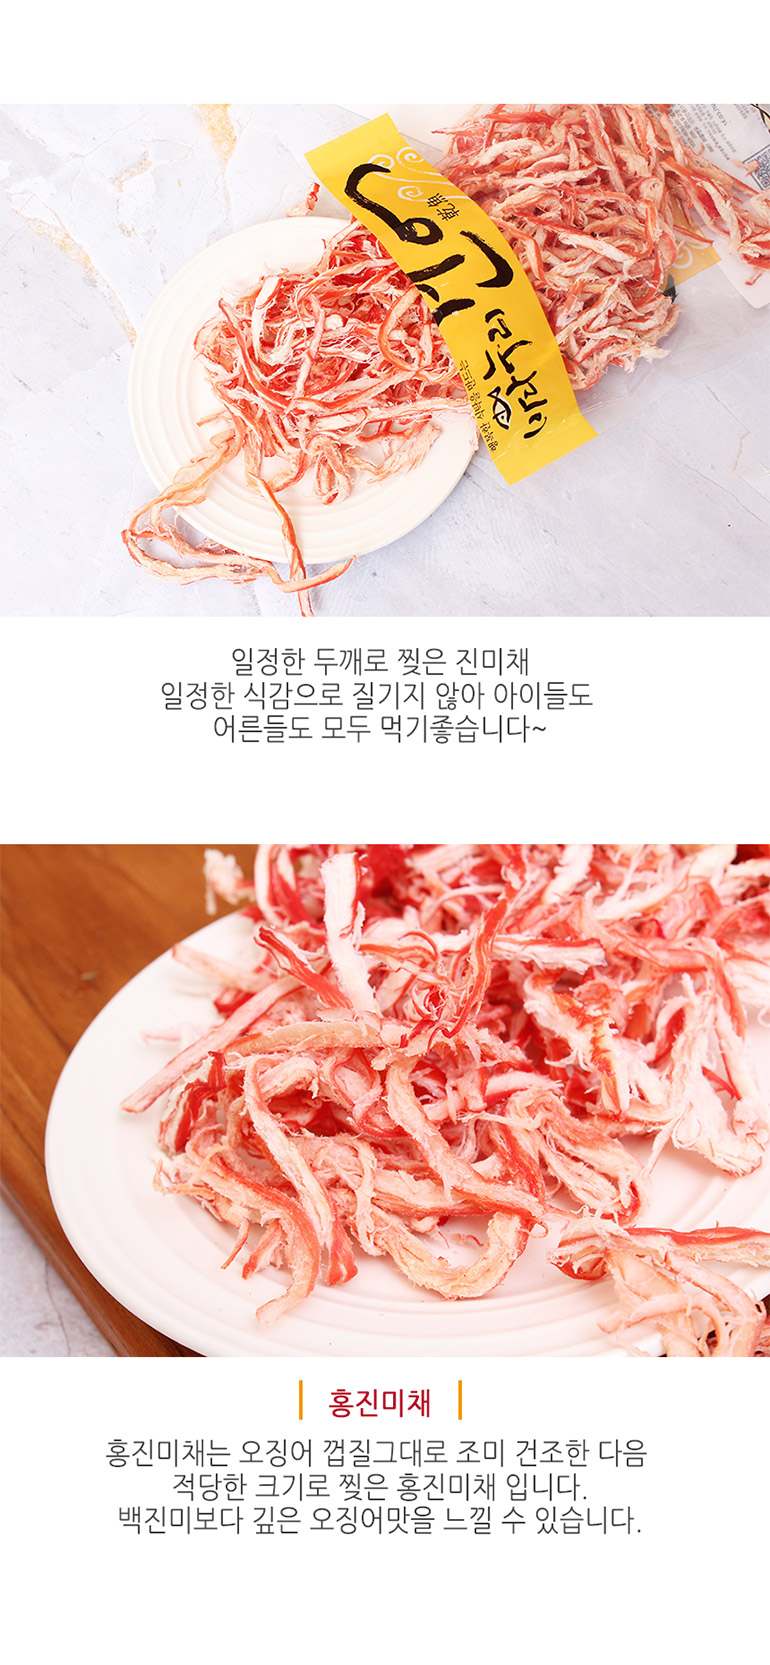 韓國食品-[바다누리] 홍진미채 웰빙참맛구이 200g